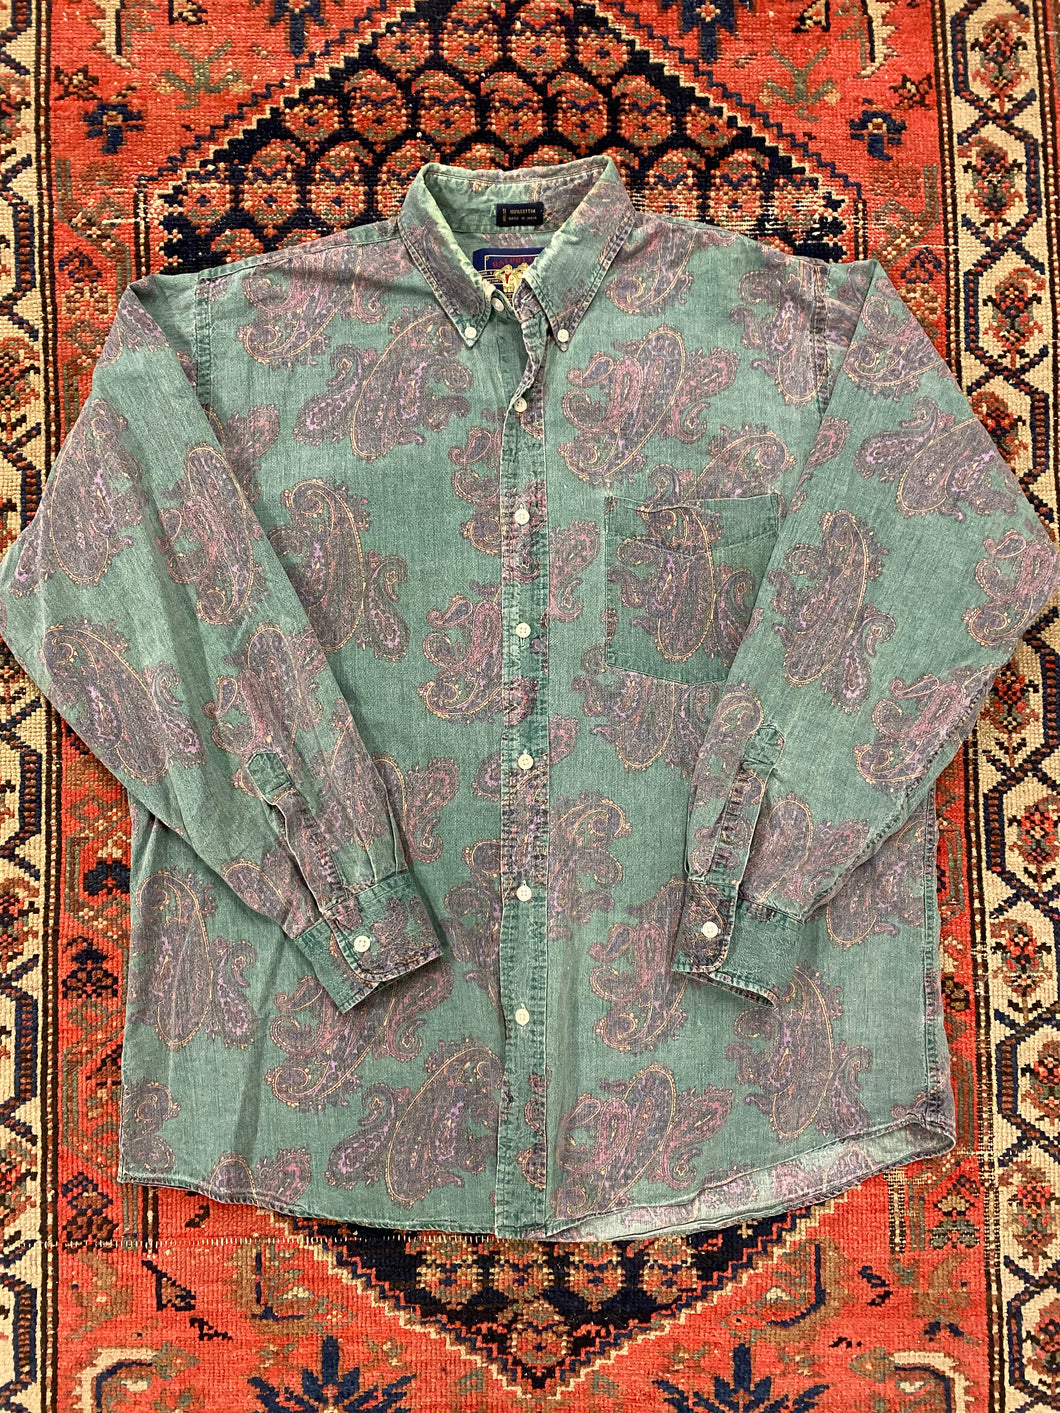 90s Paisley Button Up Shirt - L